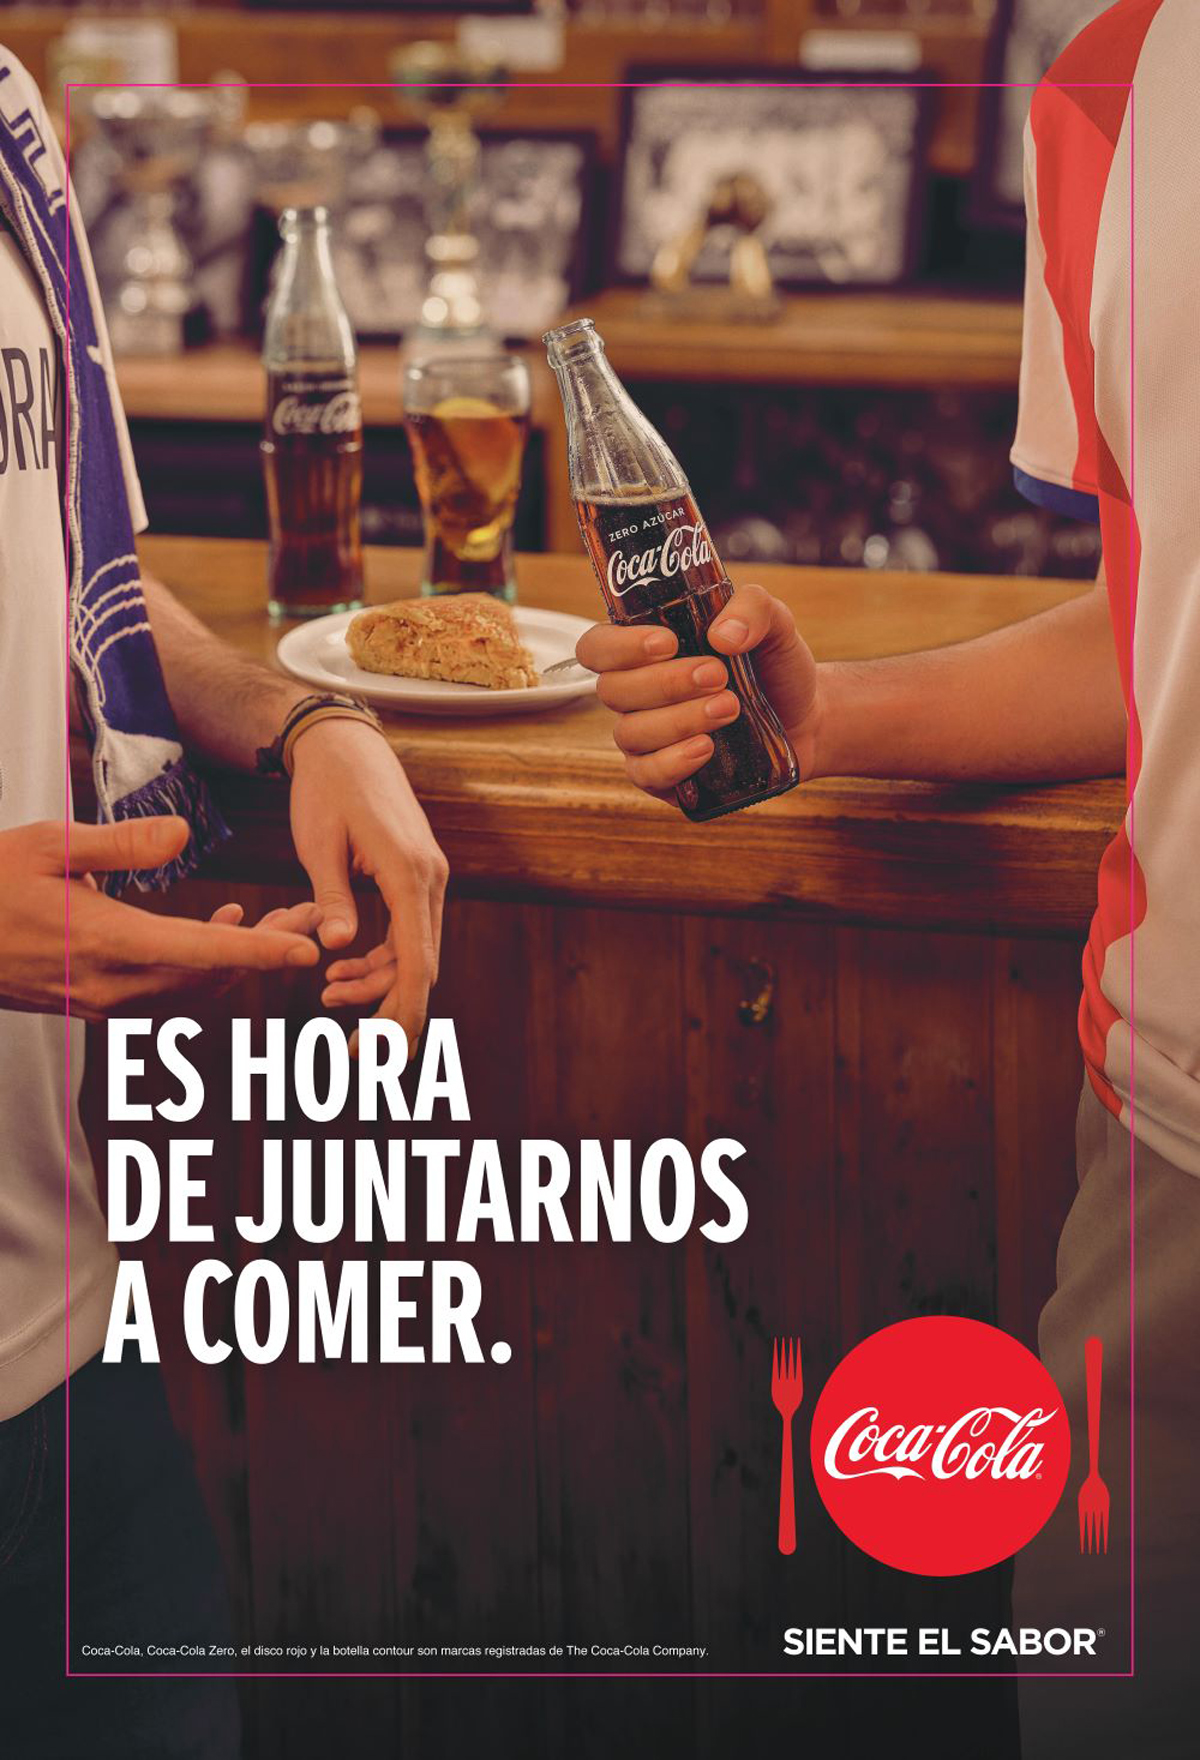 Coca Cola presenta última campaña: “Es hora de juntarnos a comer” – PR Noticias